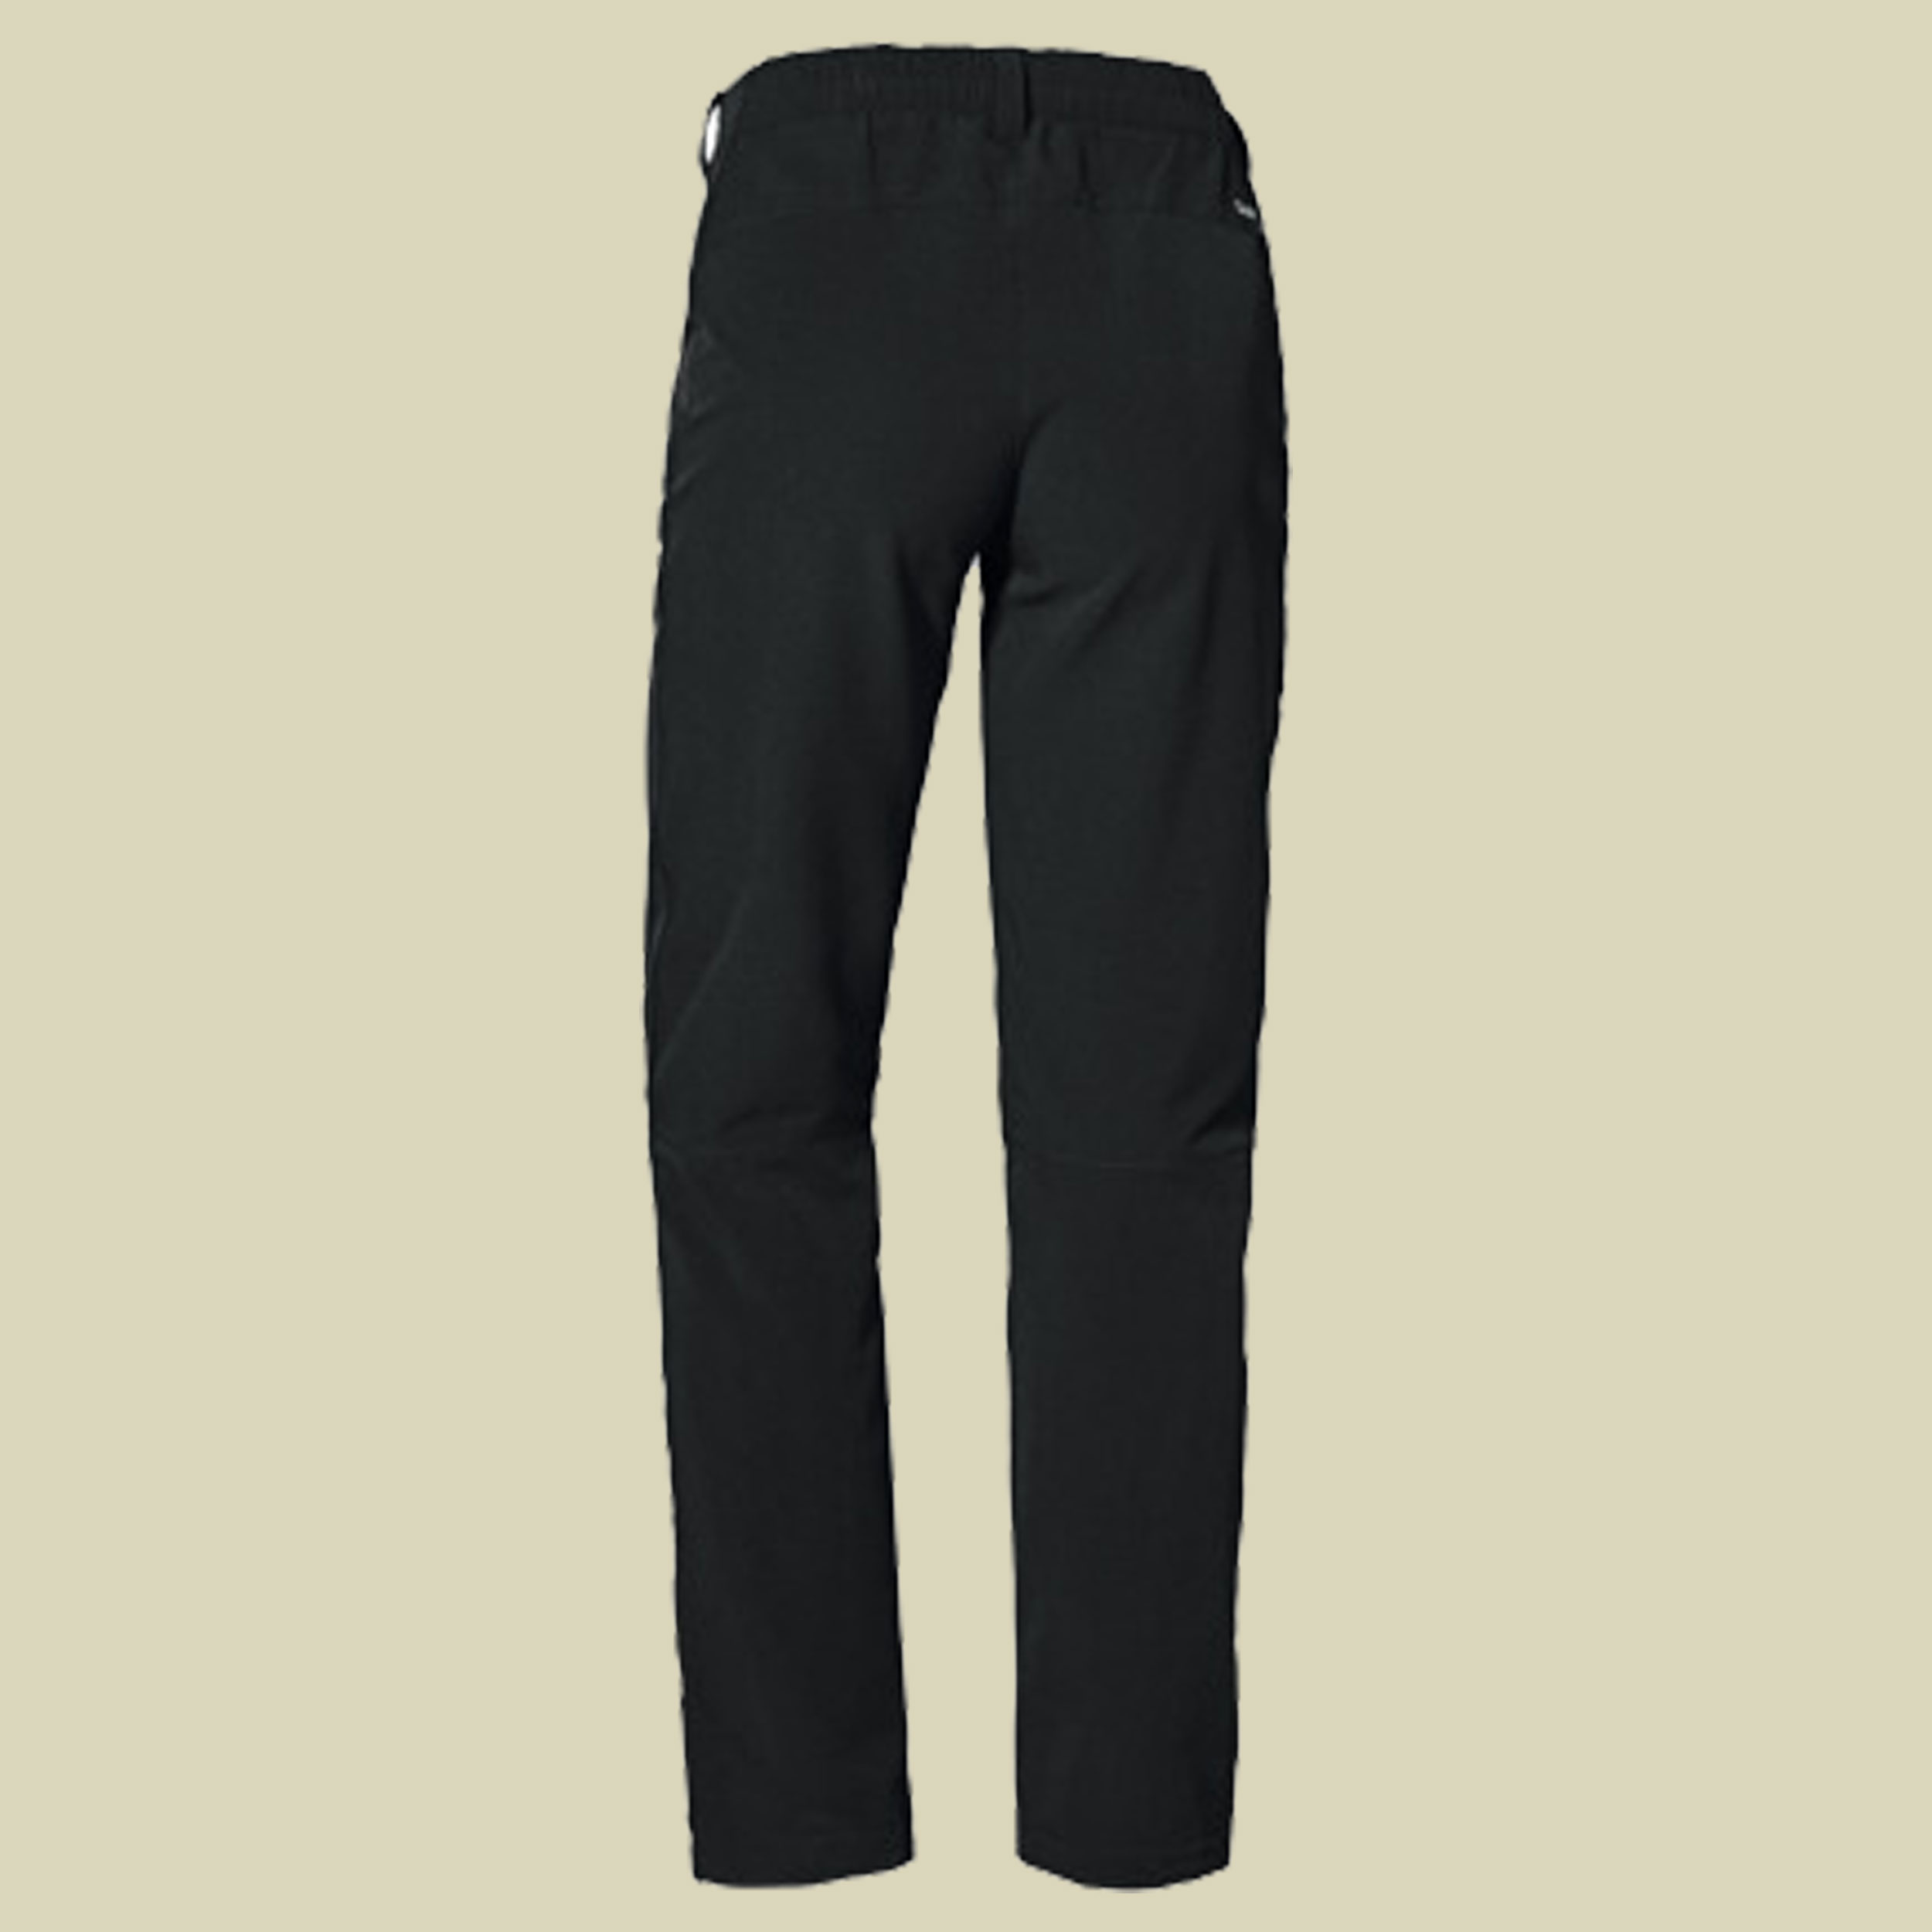 Pants Ascona Warm L Women Größe 21 Farbe black